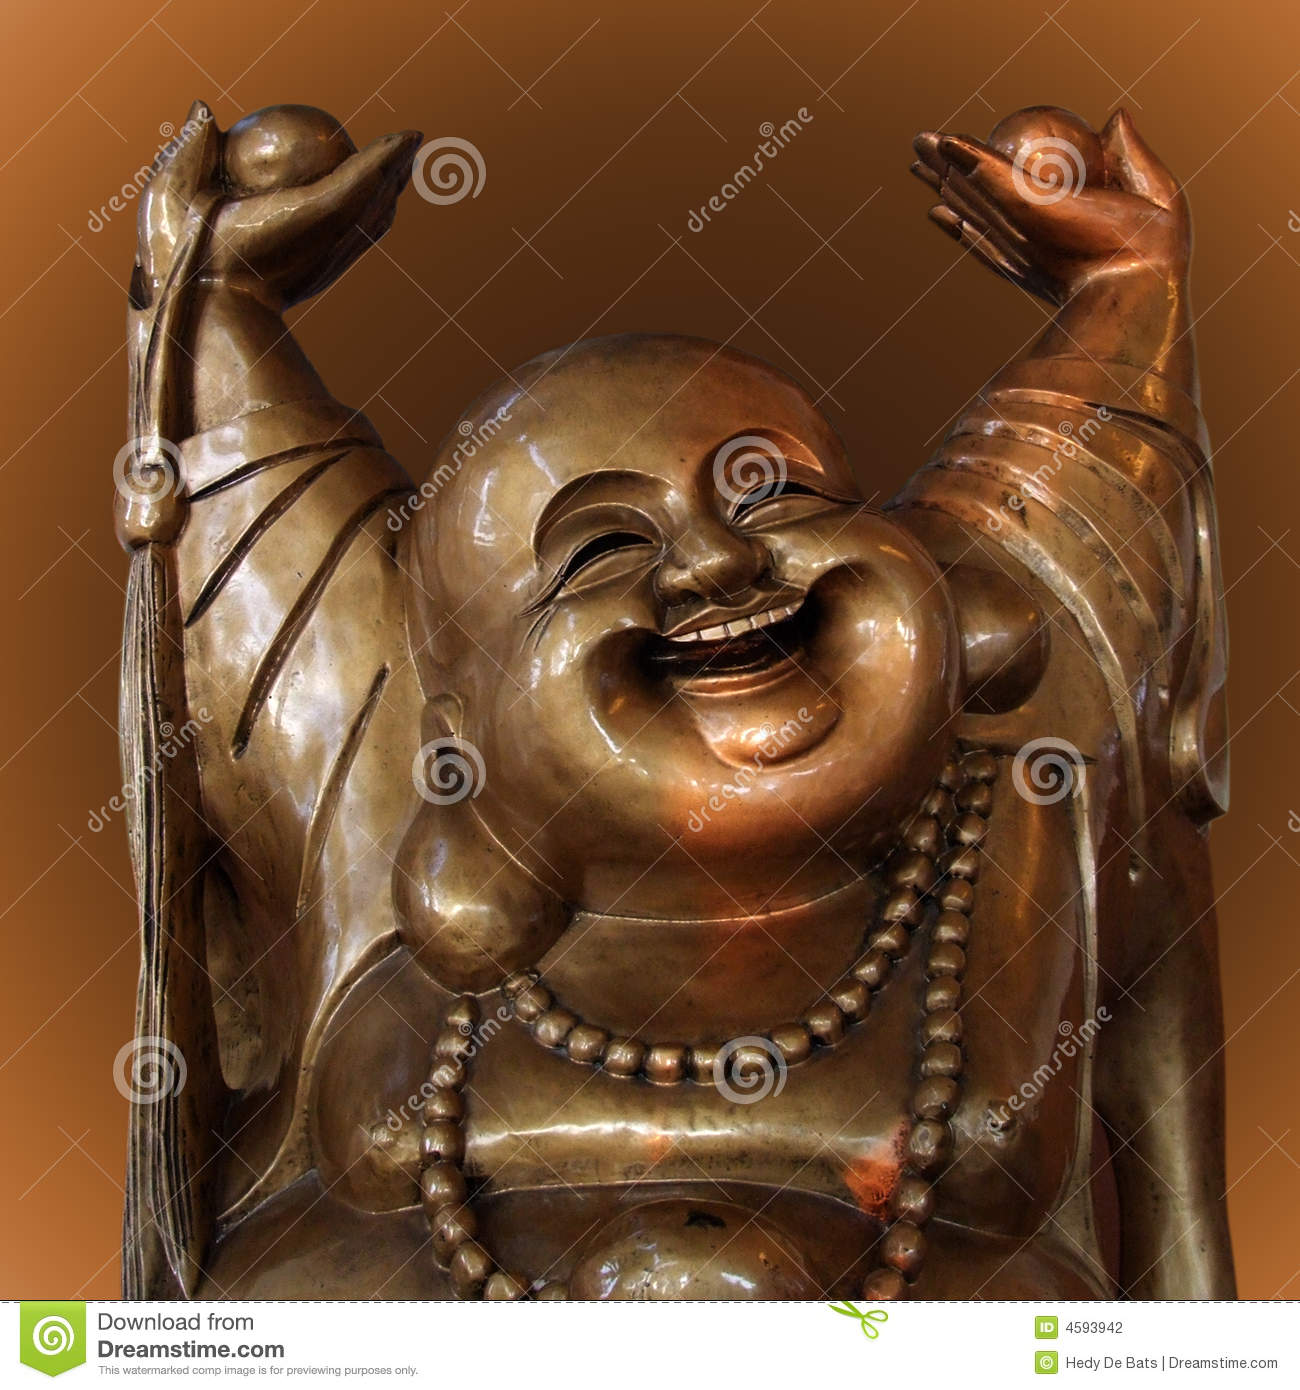 laughing-buddha-figurine-4593942.jpg